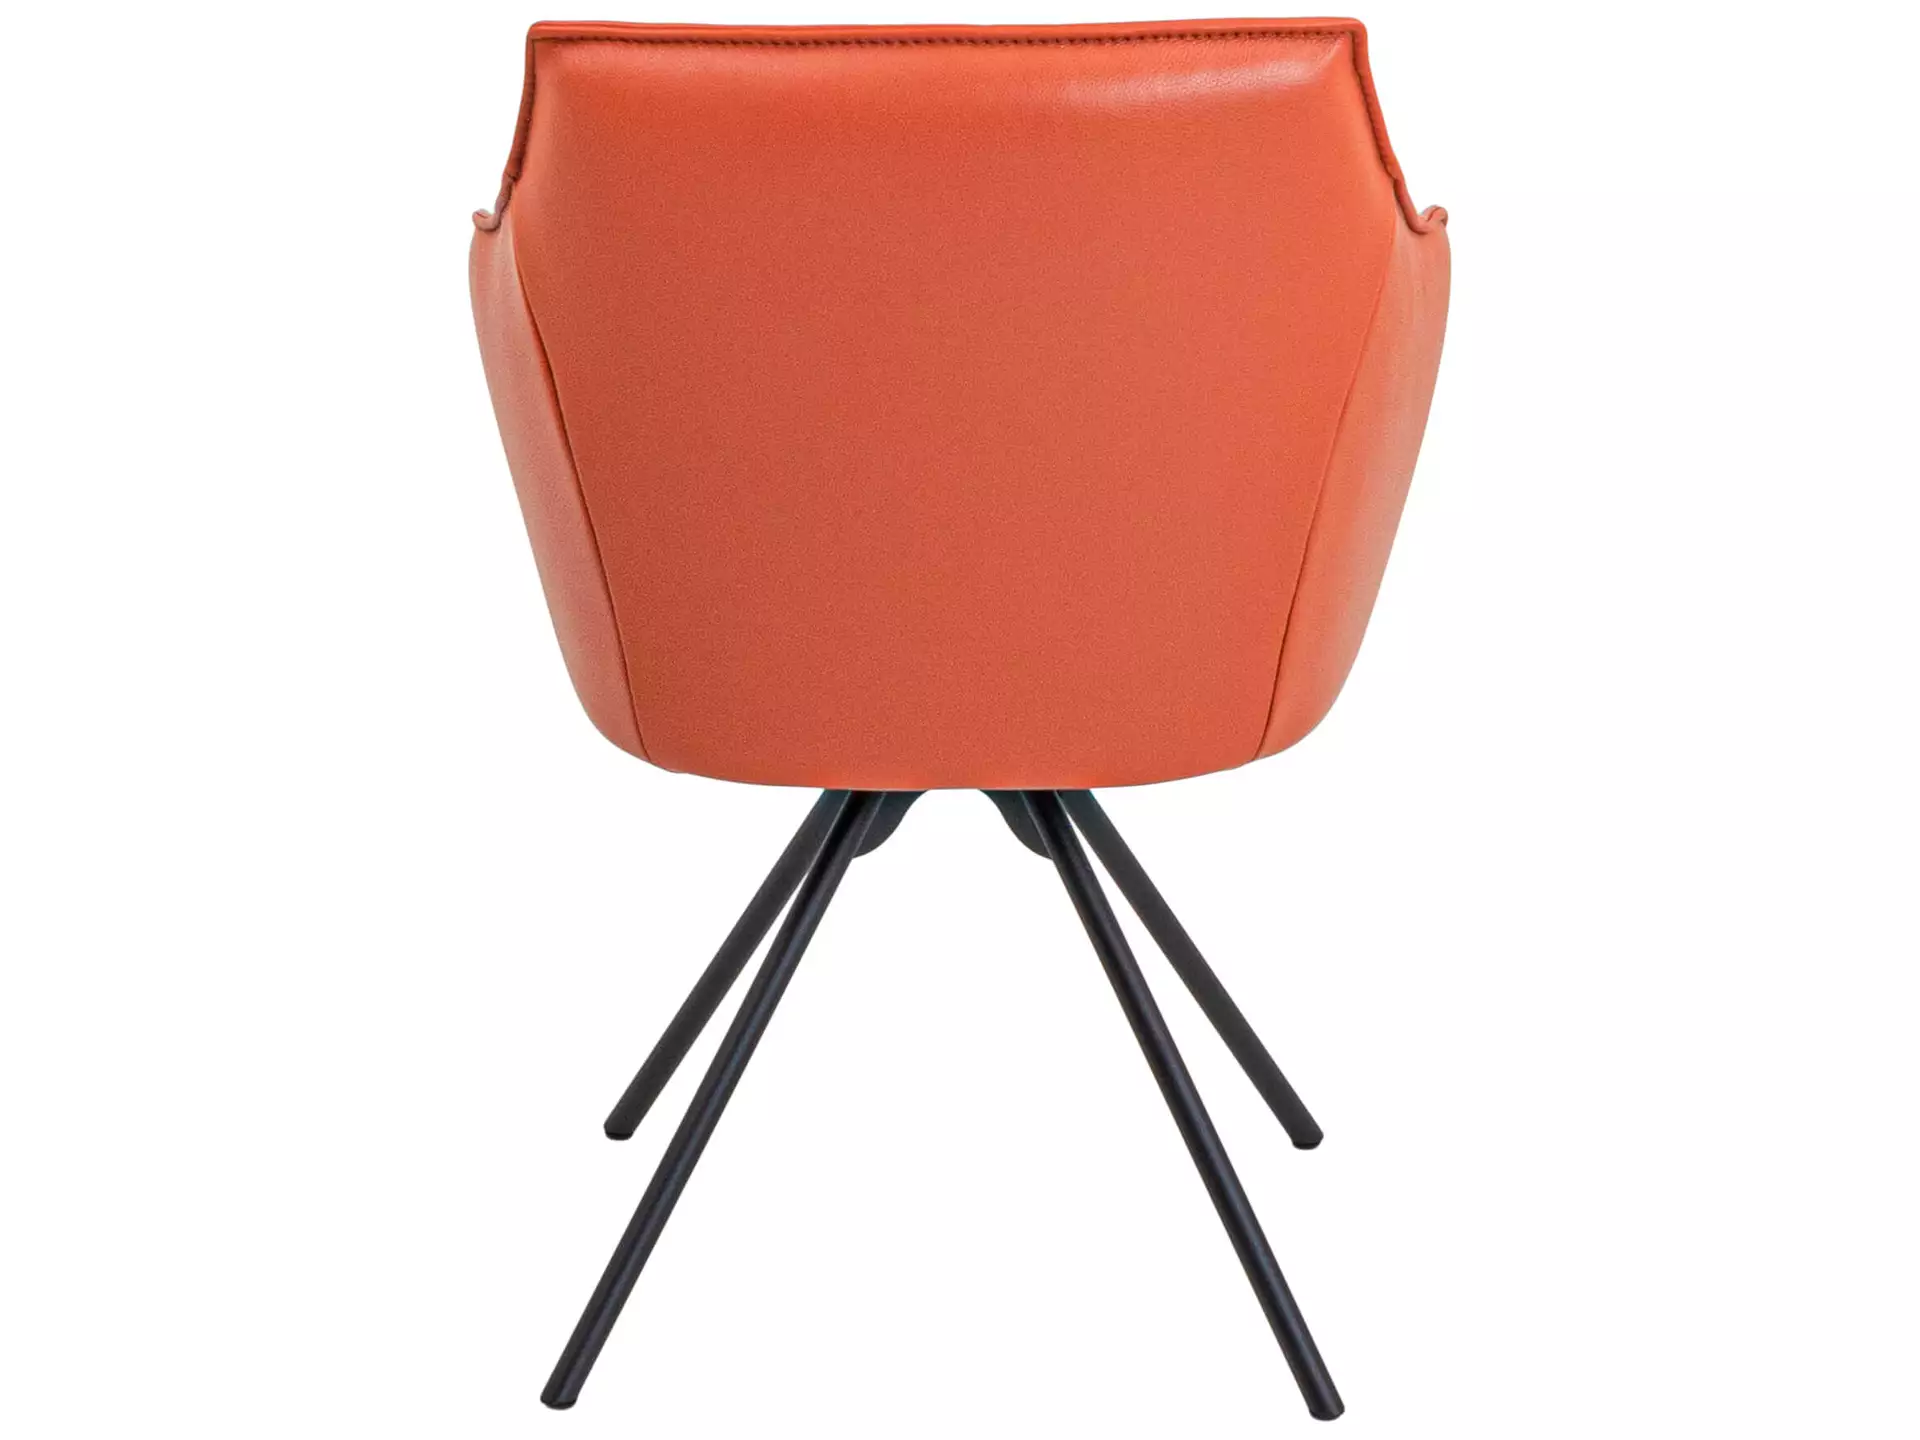 Armlehnstuhl Derek Koinor / Farbe: Orange / Bezugsmaterial: Leder